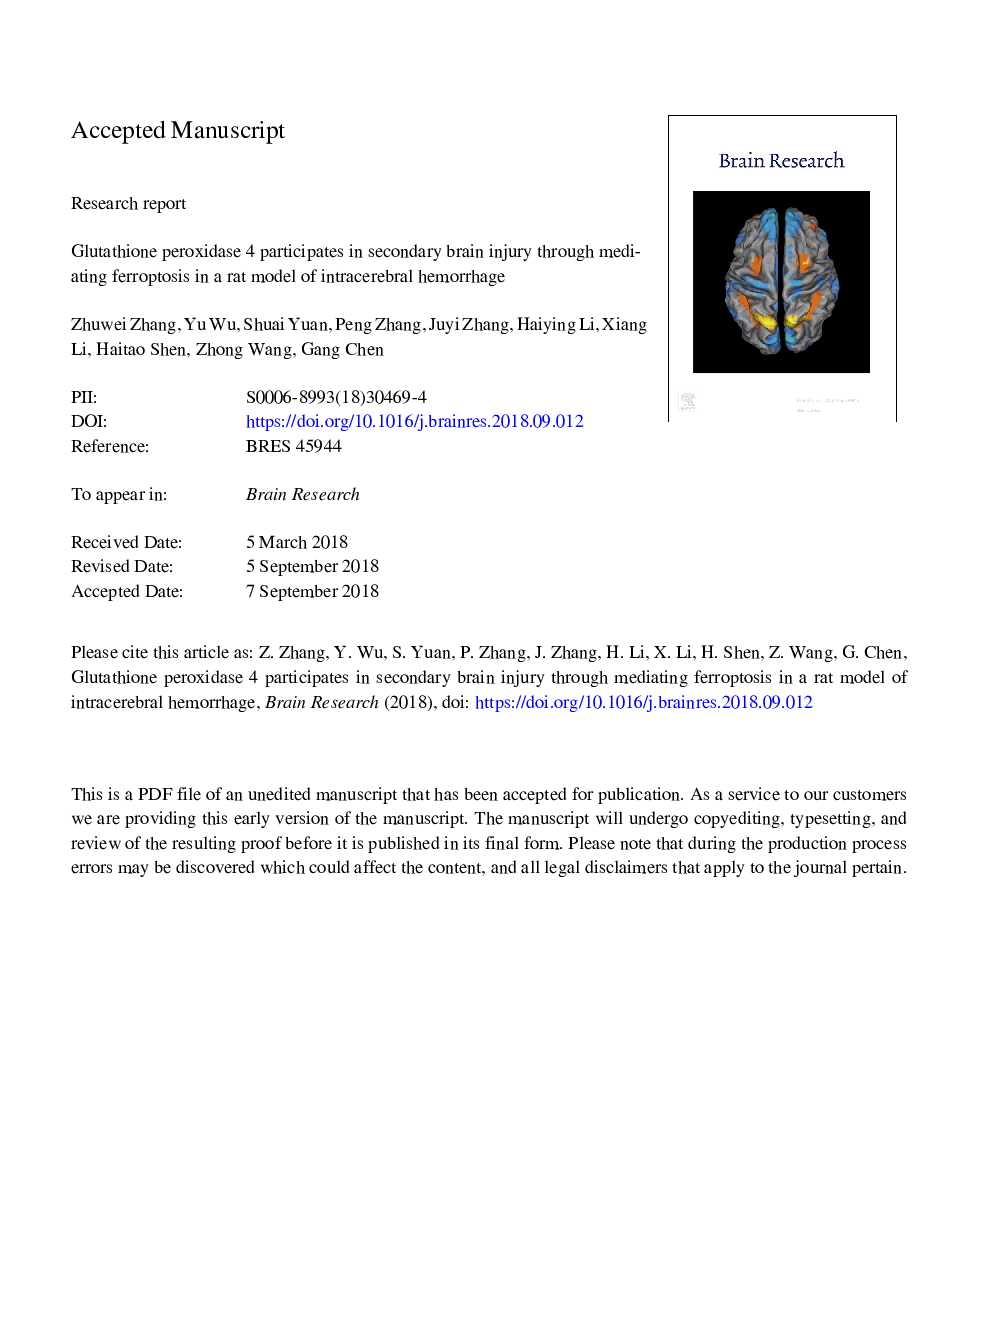 گلوتاتیون پراکسیداز 4 در آسیب ثانویه مغزی به وسیله میانجیگری فروپوتوز در یک مدل رت از خونریزی داخل مغزی